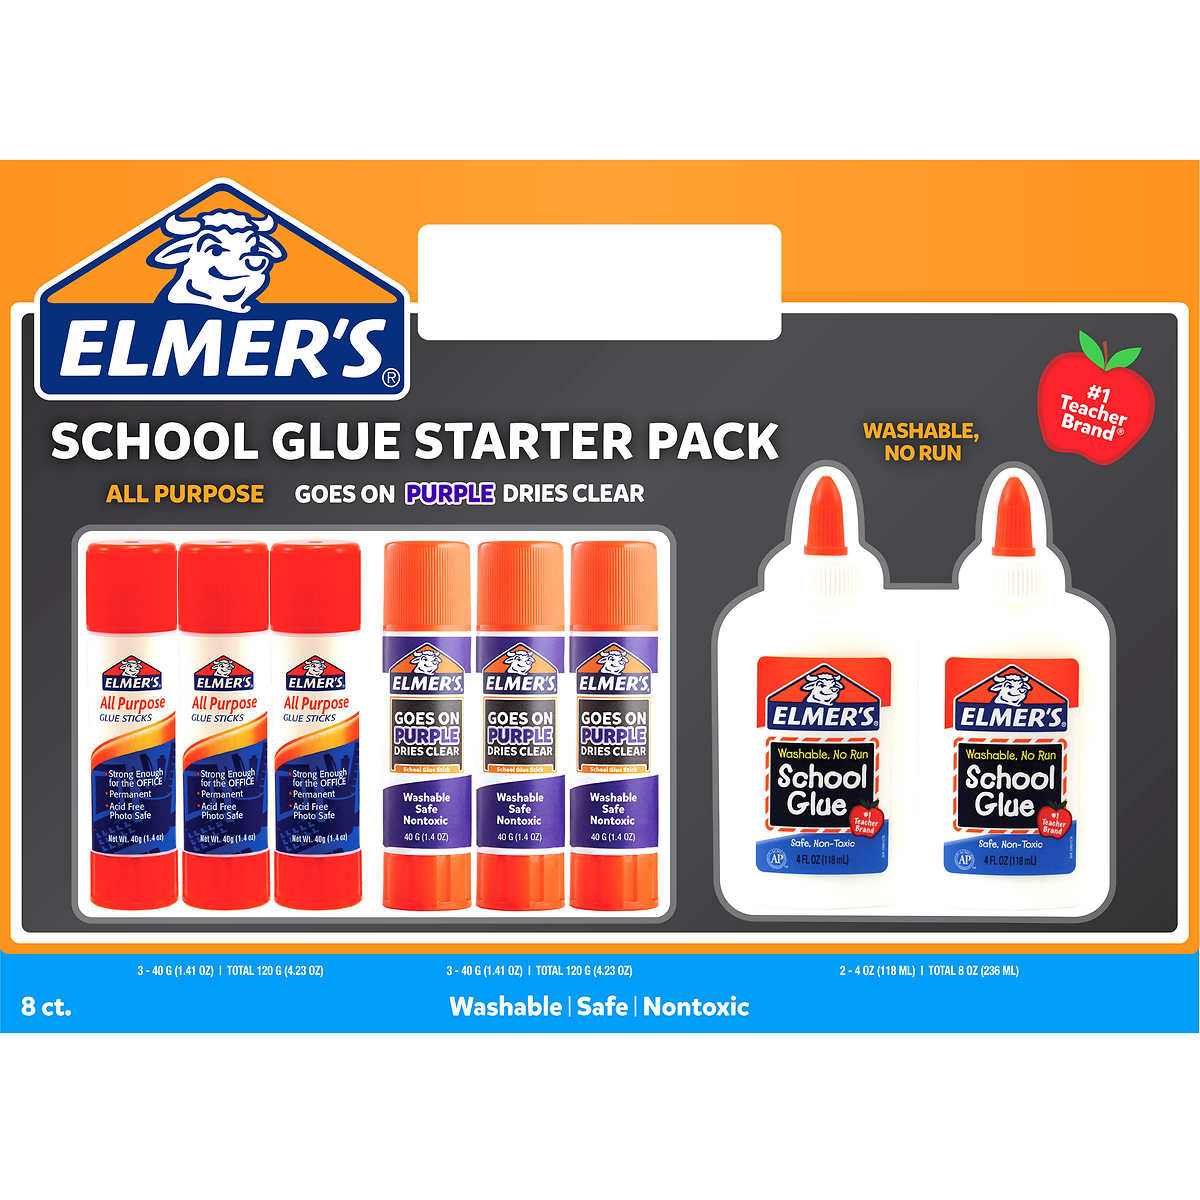 Elmer's Glue School Starter Pack —